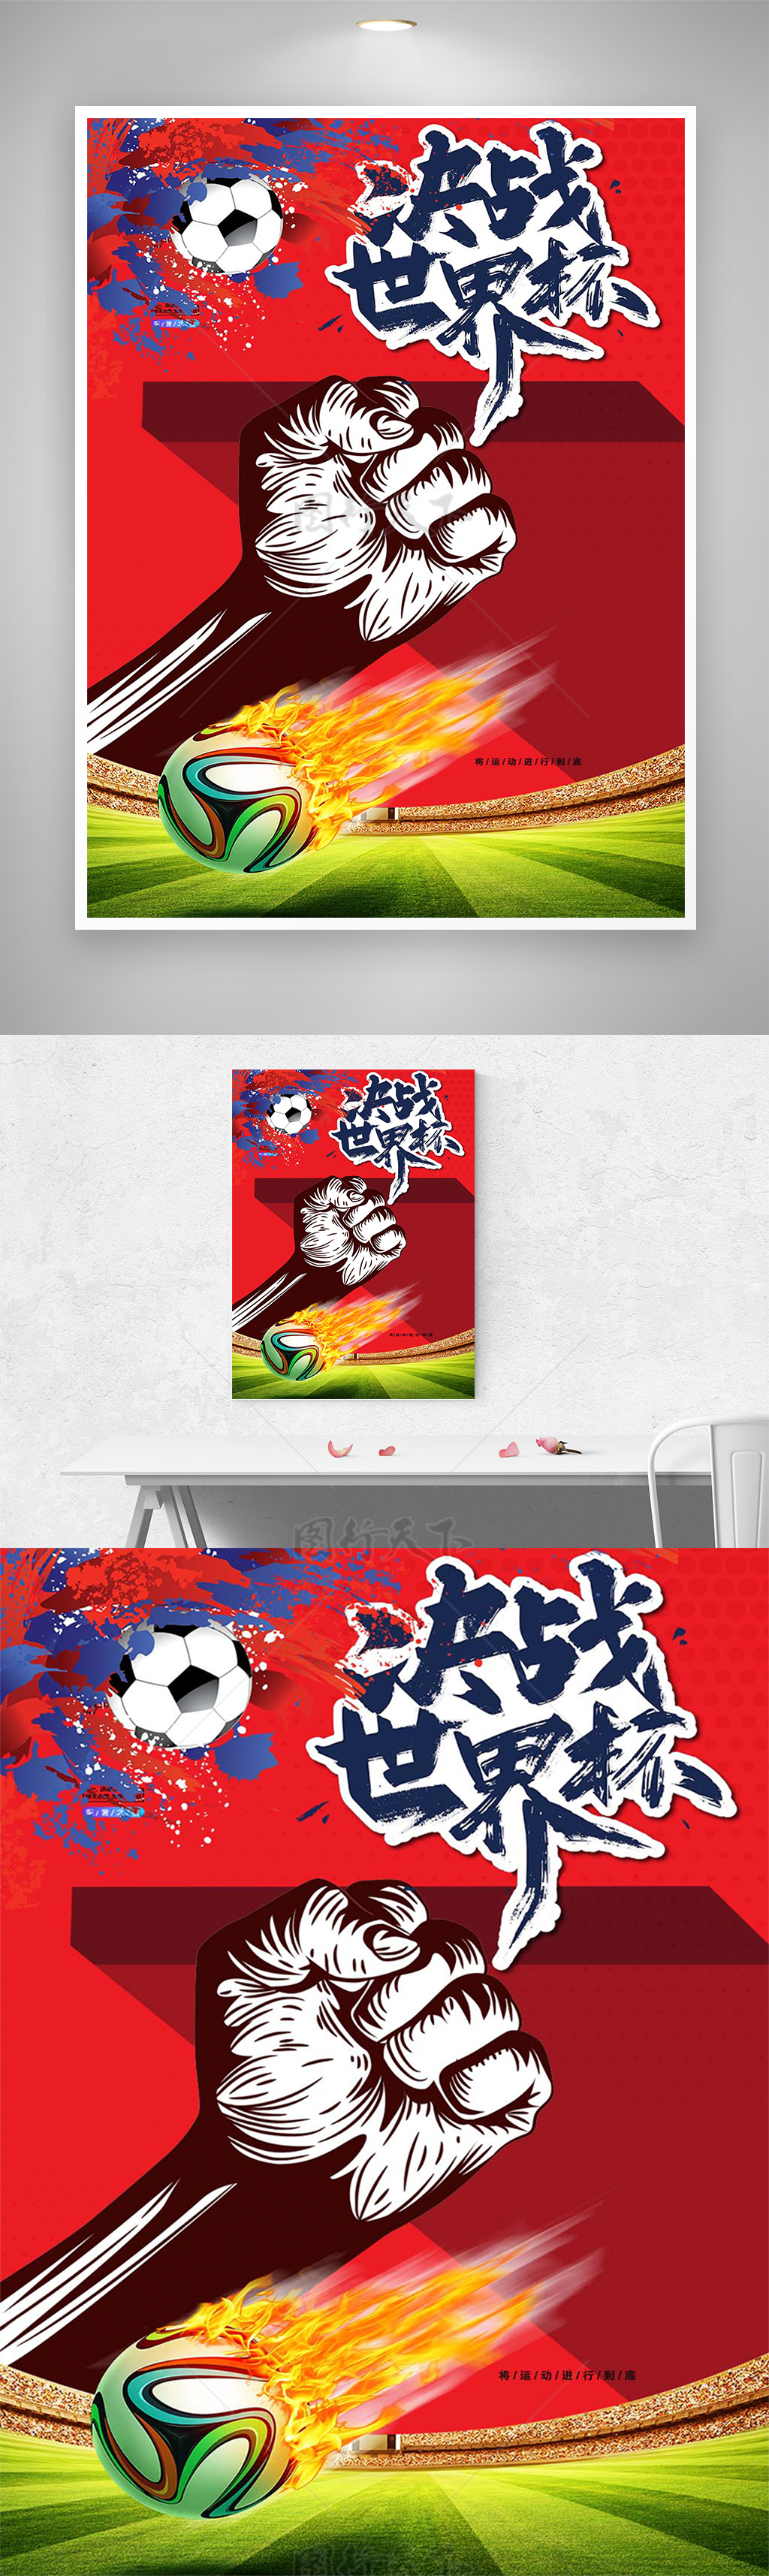 决战世界杯红色热血宣传海报